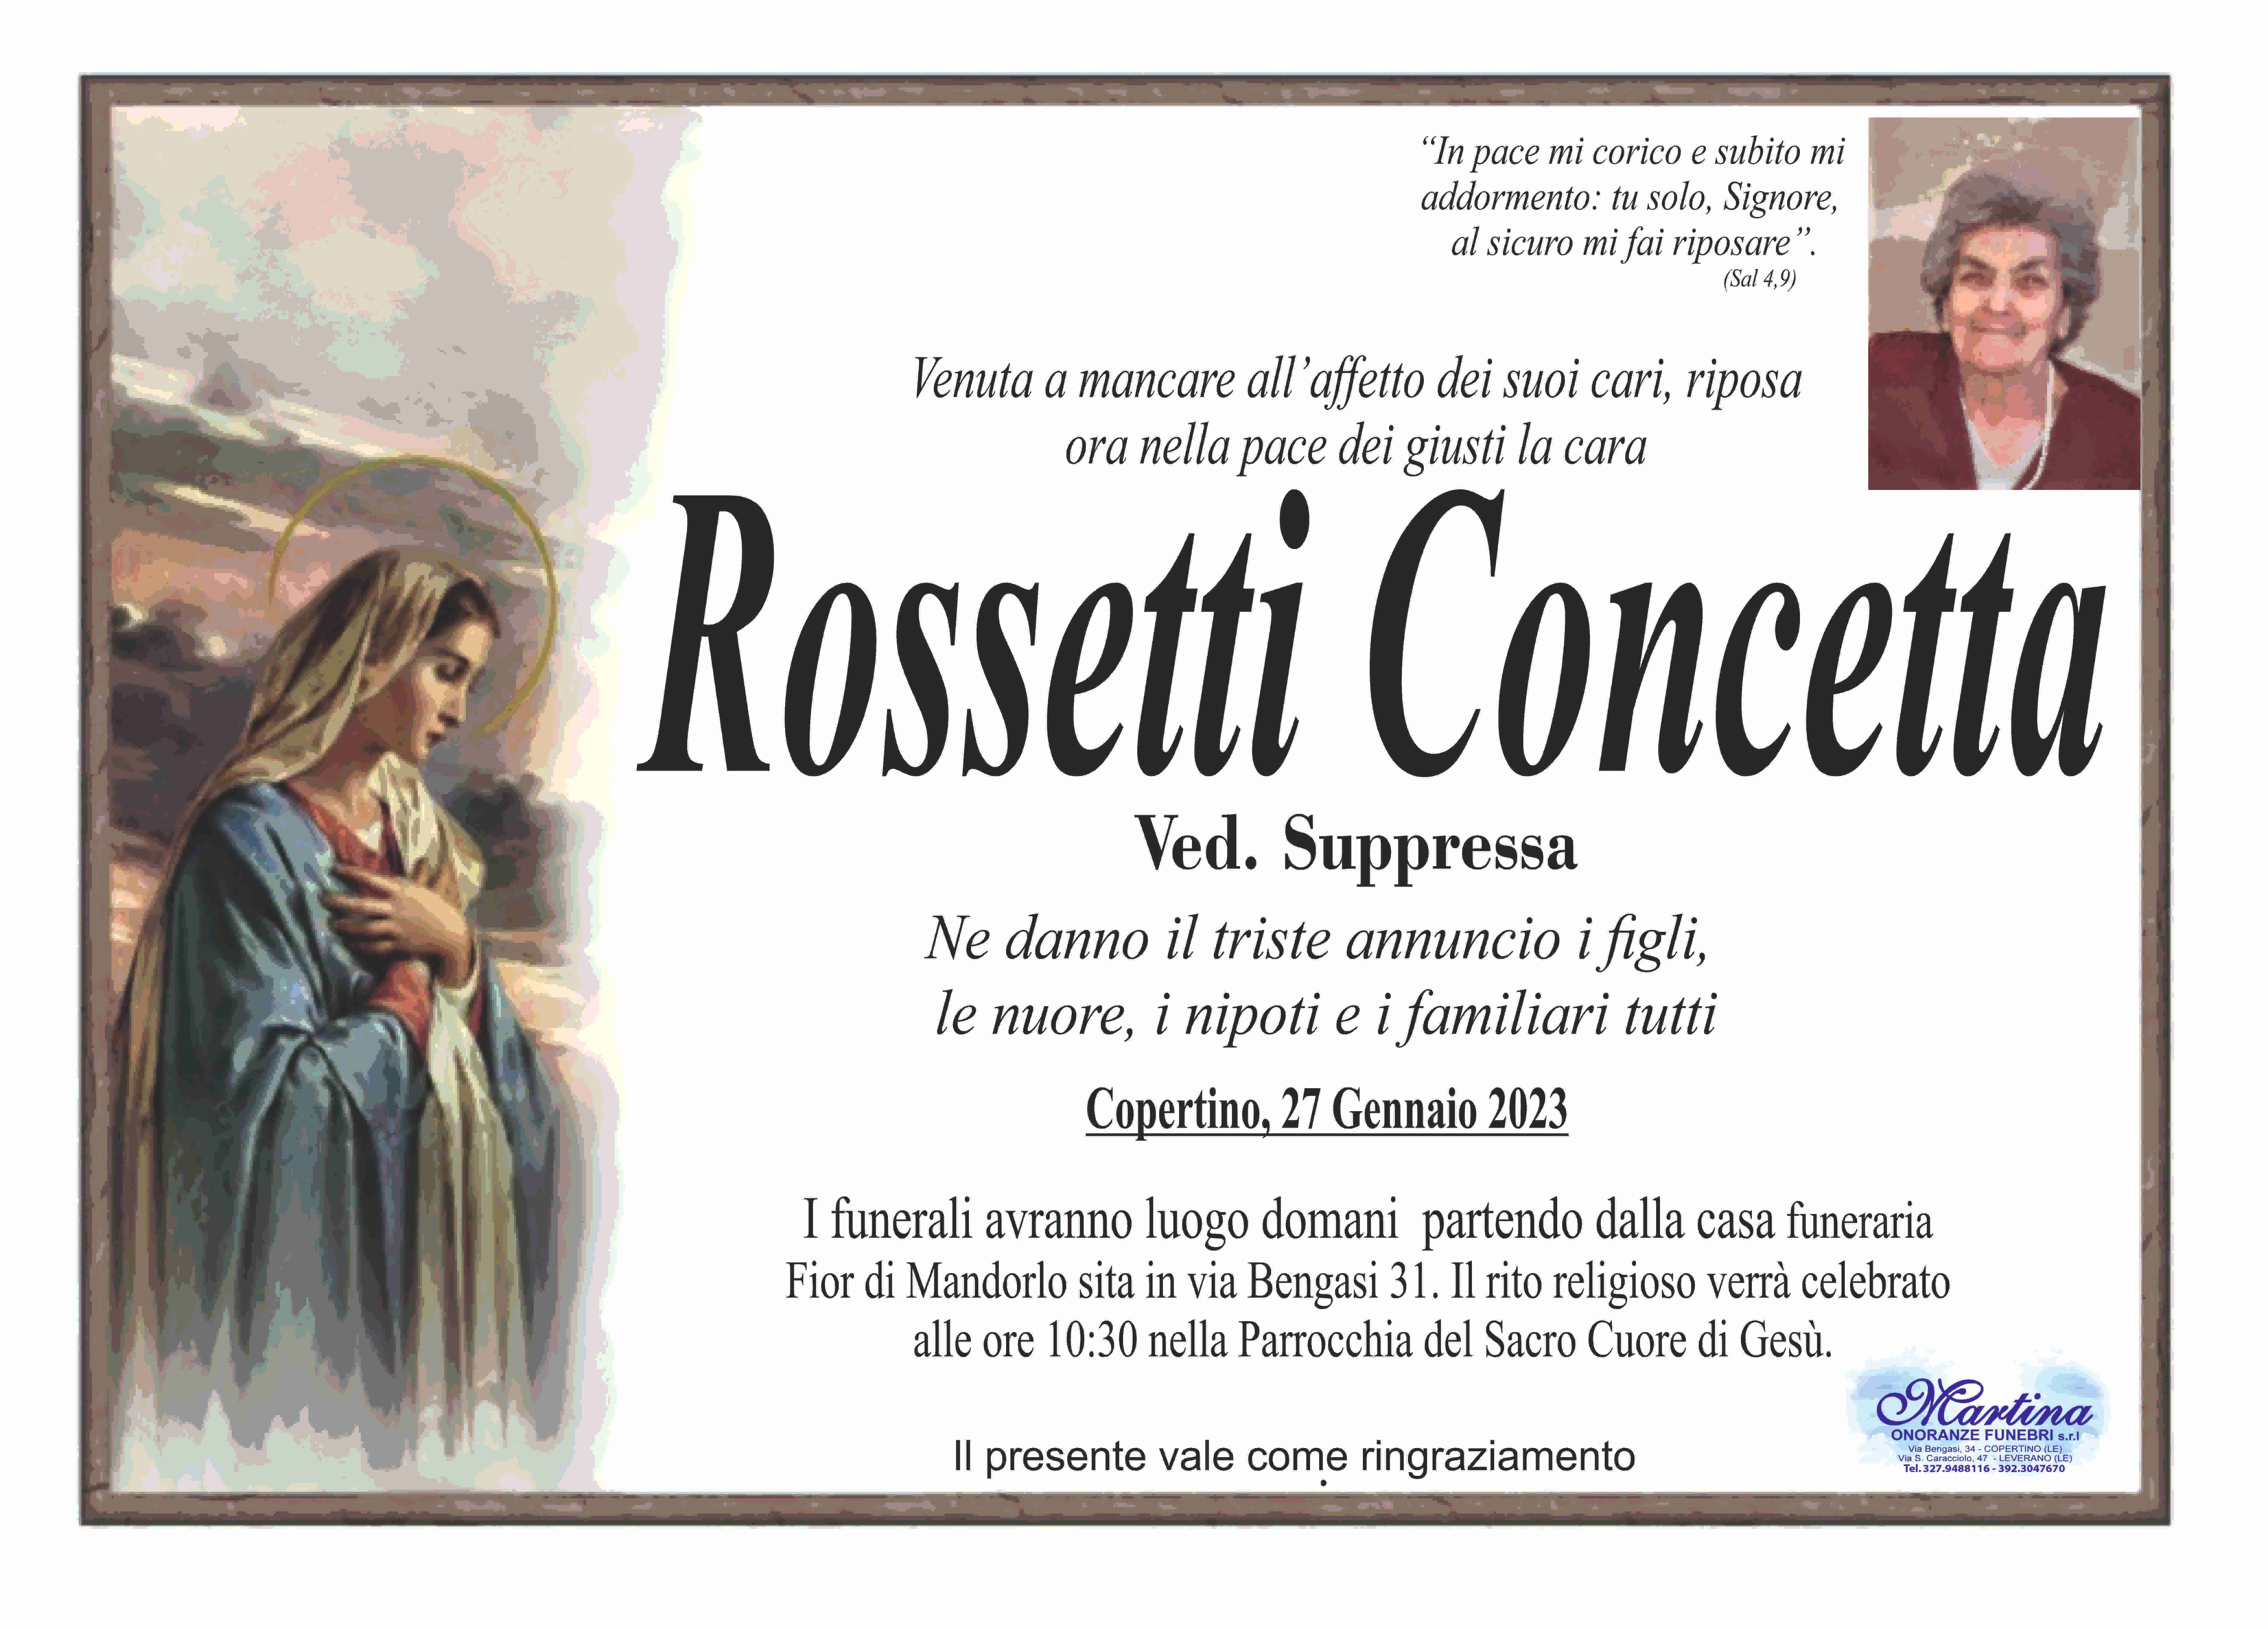 Concetta Rossetti